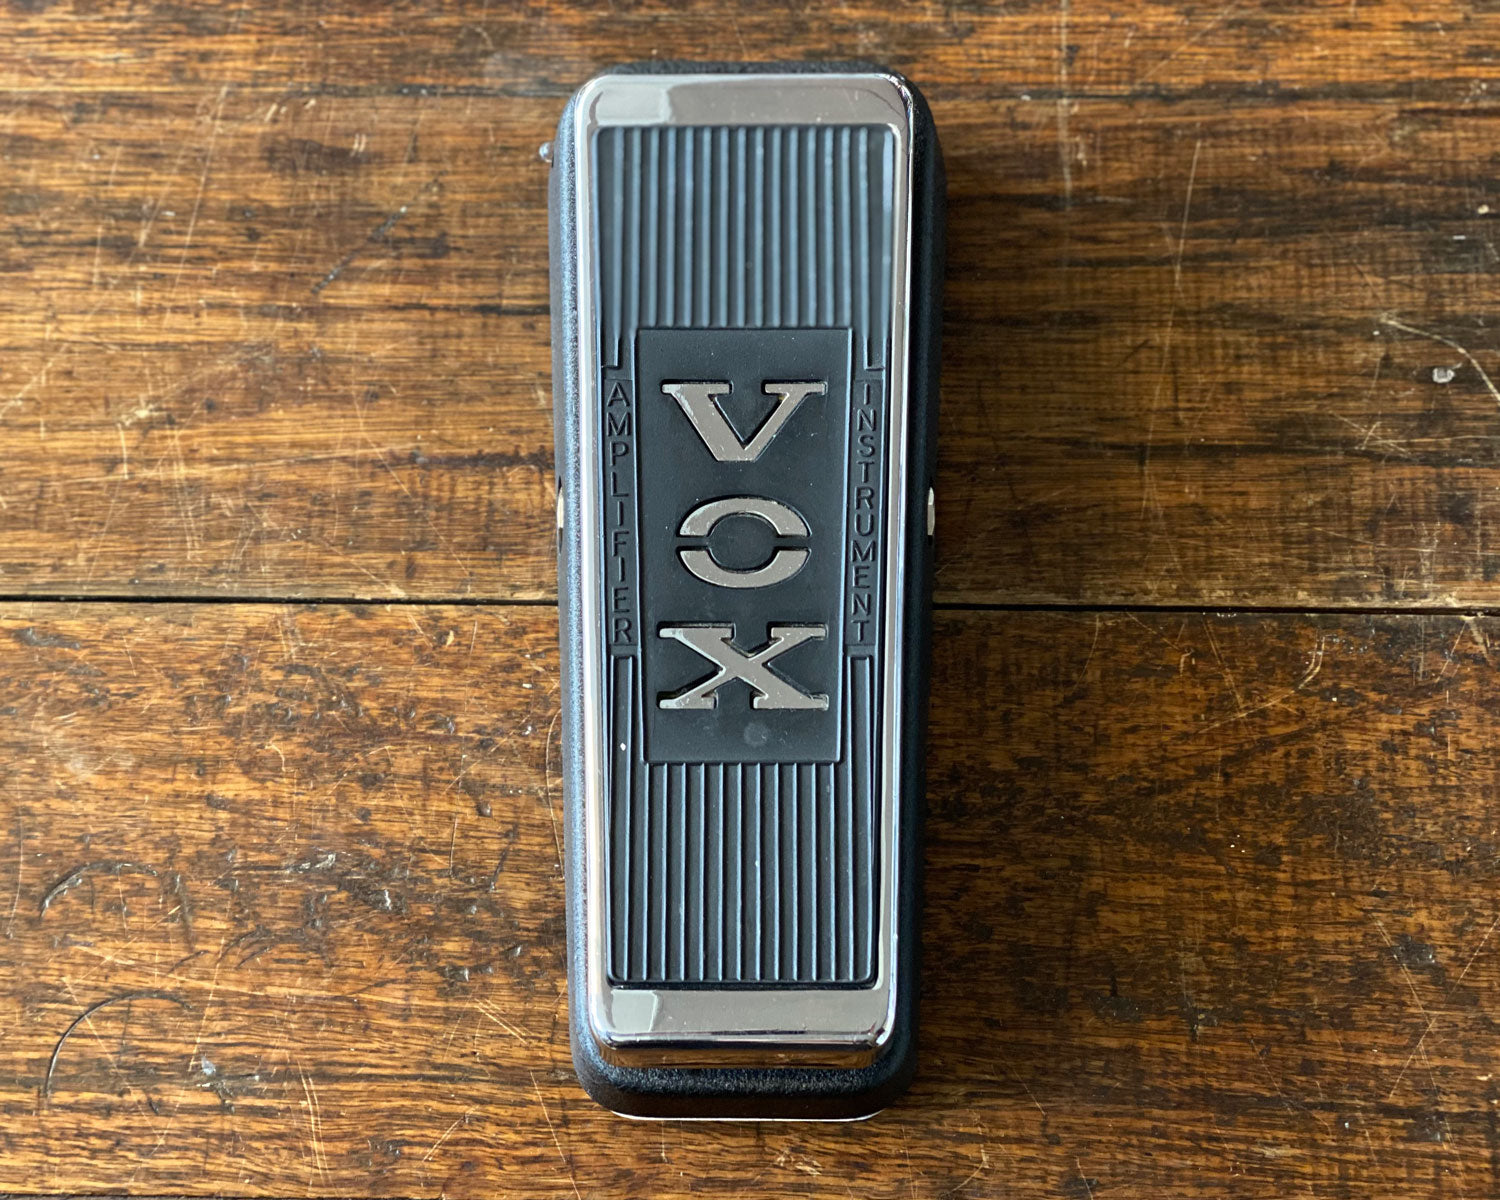 Modded Vox V847 Wah